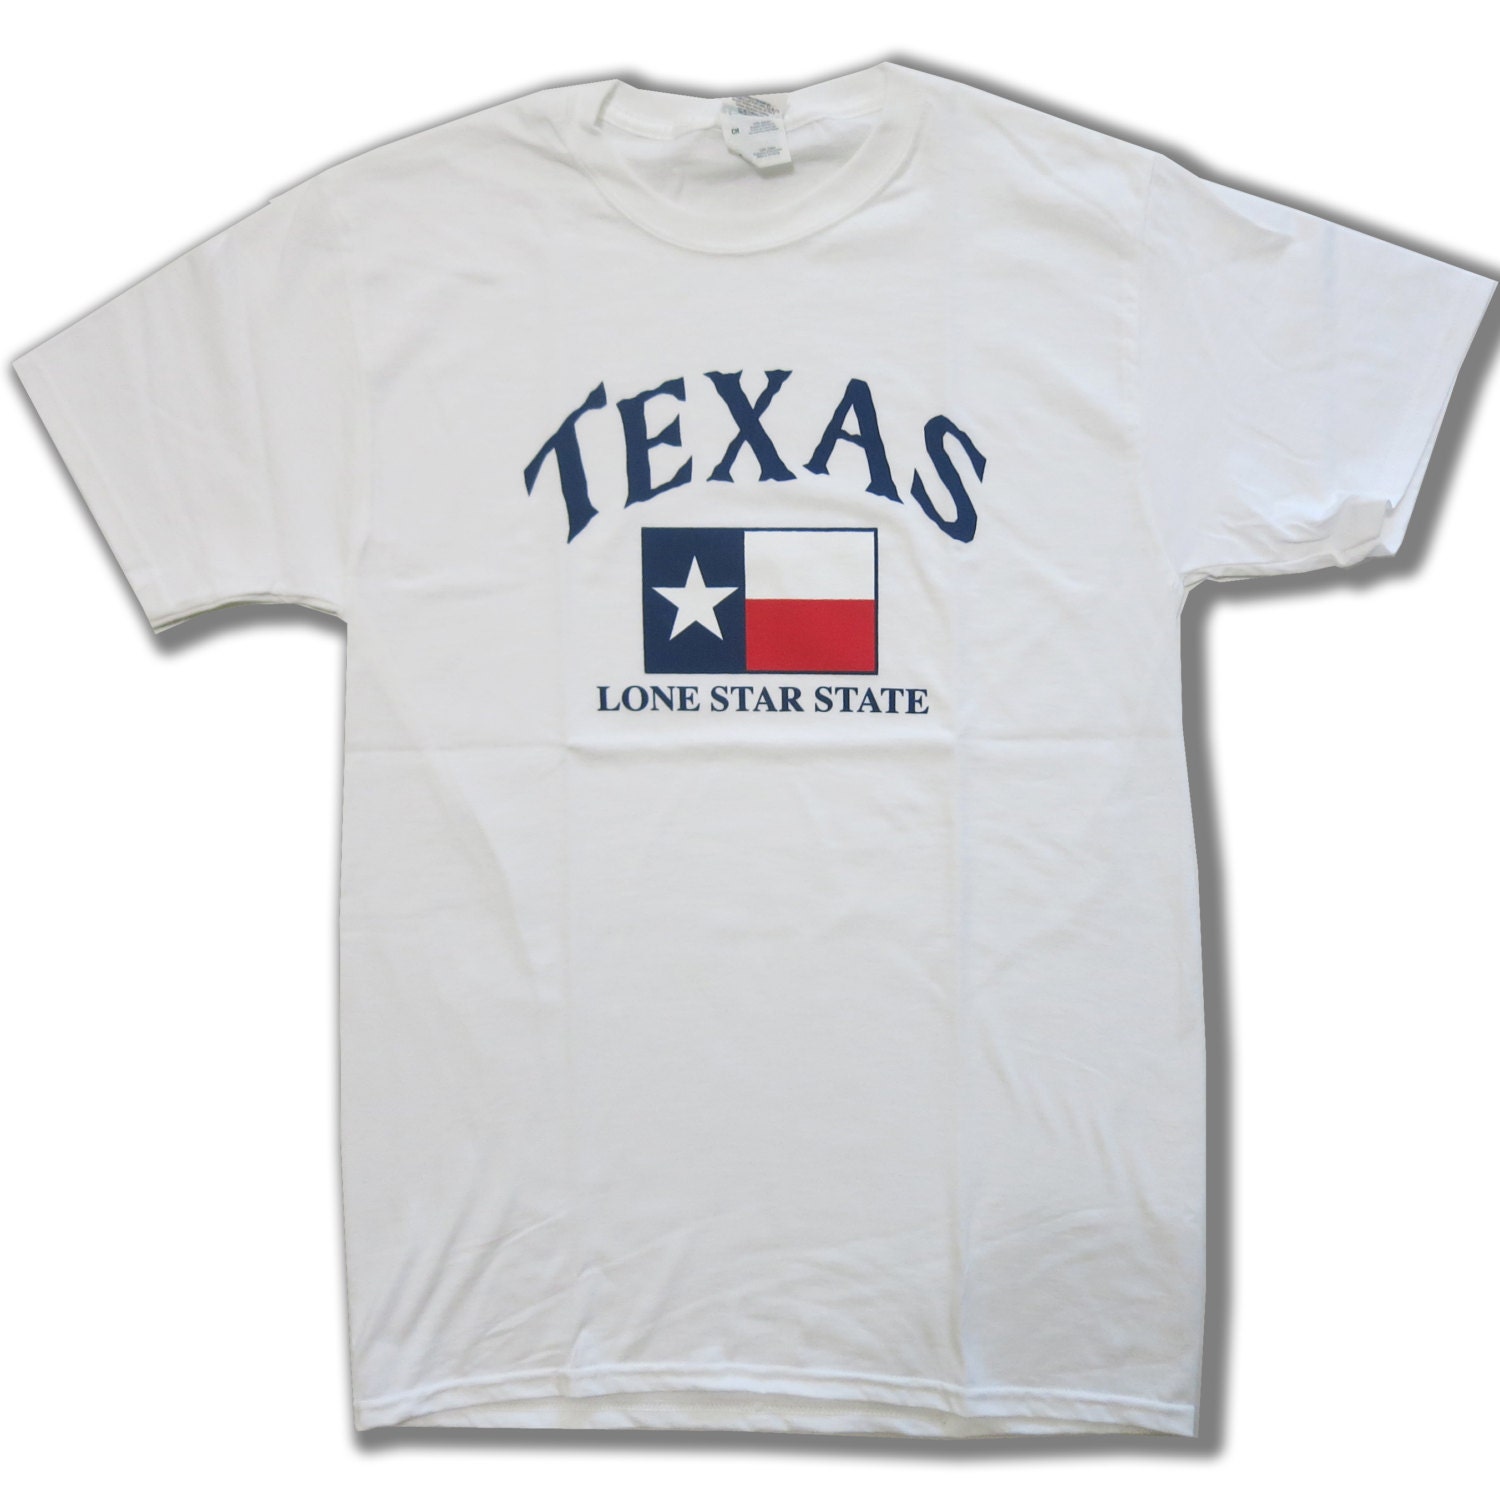 Texas Lone Star State Texas Souvenir T-Shirt by mvptshirt on Etsy